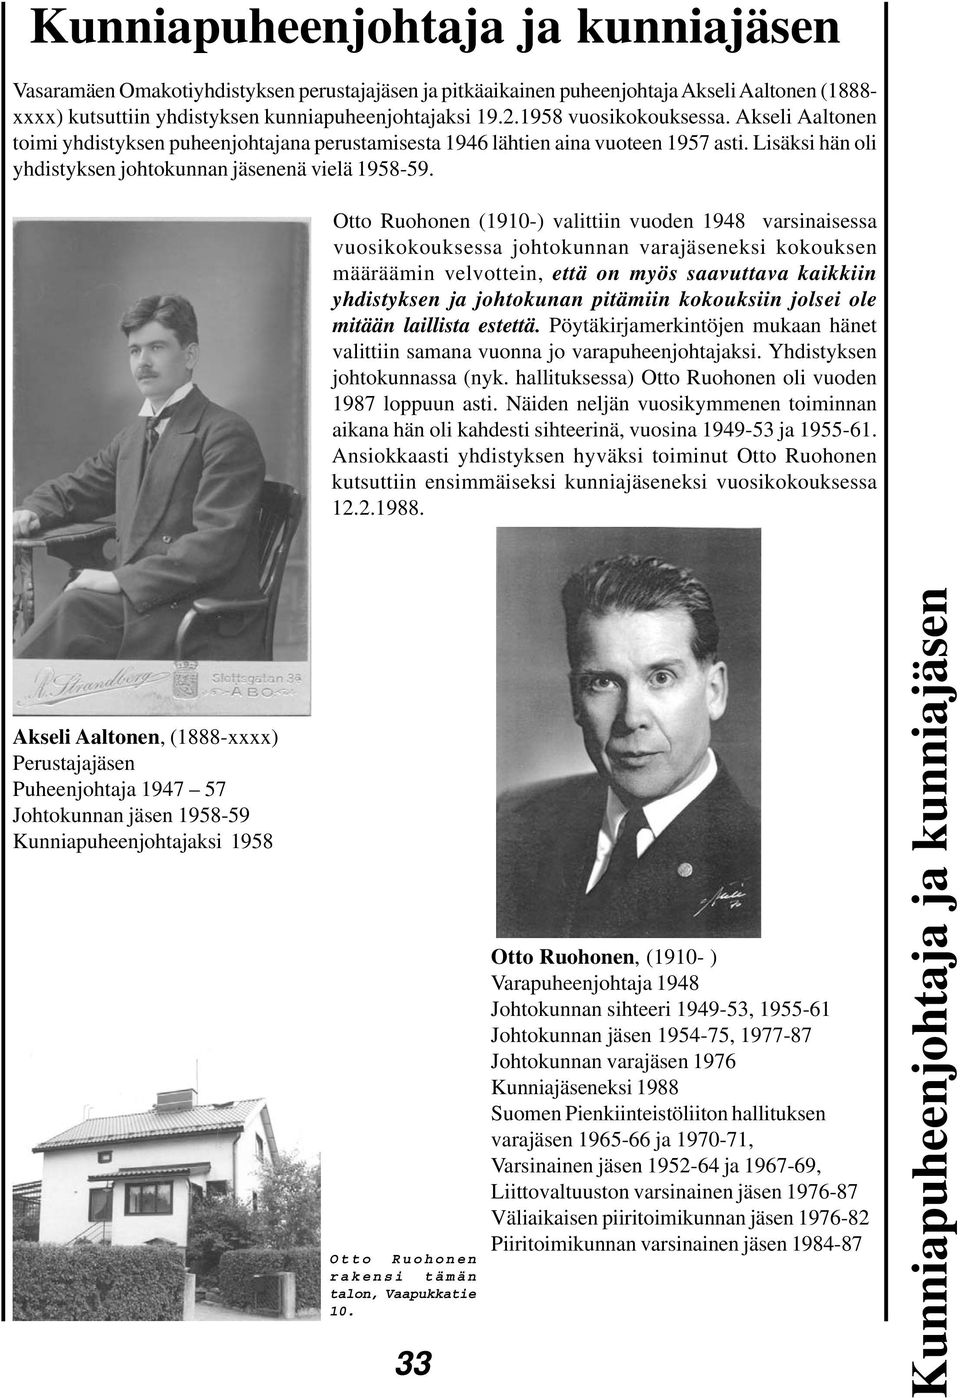 Otto Ruohonen (1910-) valittiin vuoden 1948 varsinaisessa vuosikokouksessa johtokunnan varajäseneksi kokouksen määräämin velvottein, että on myös saavuttava kaikkiin yhdistyksen ja johtokunan